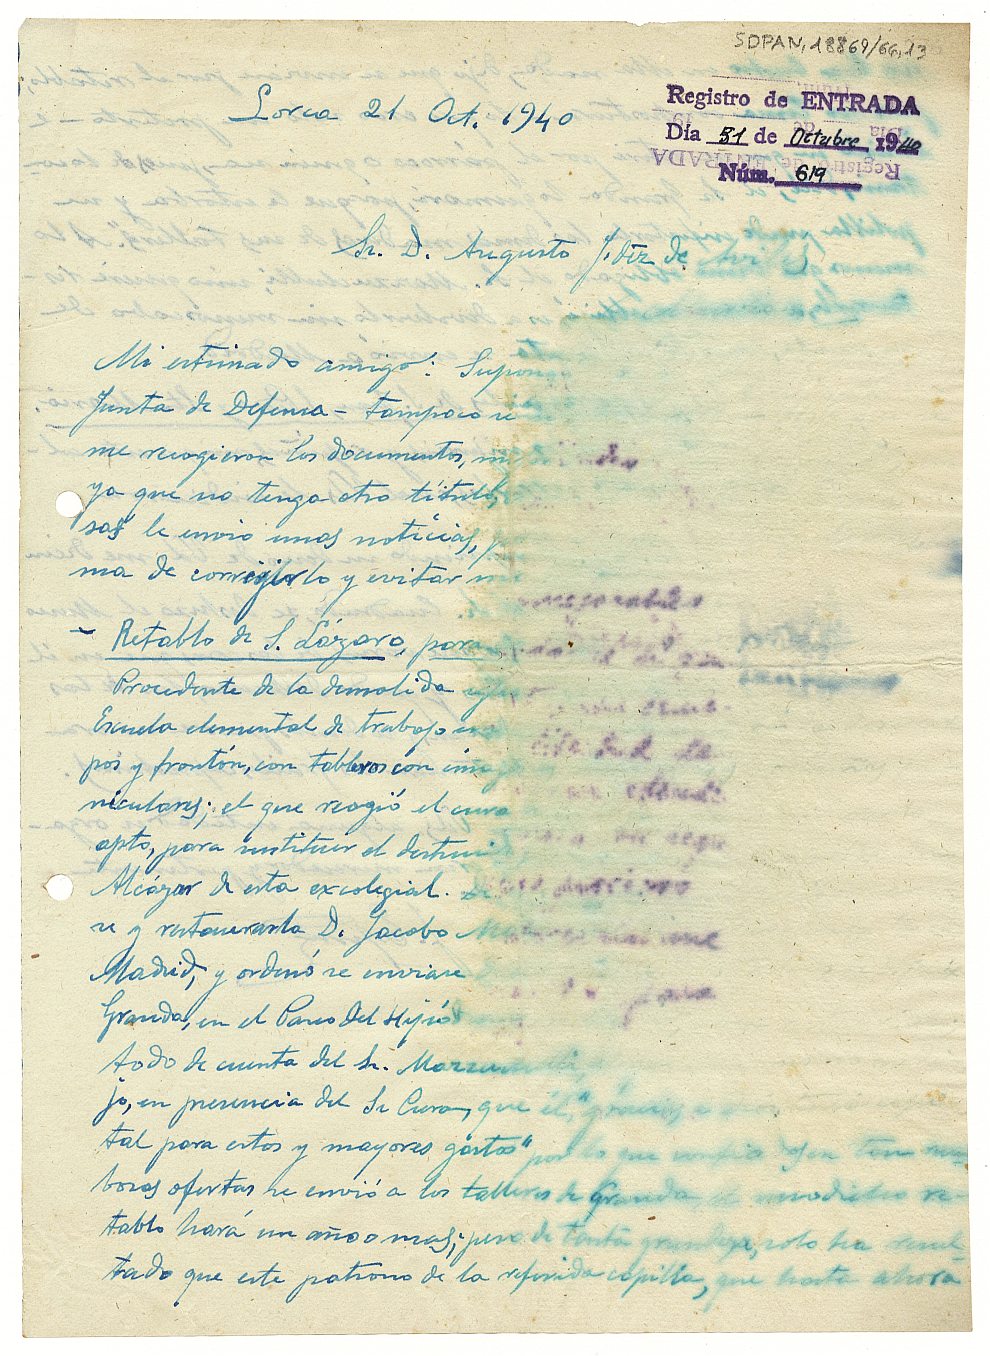 Carta enviada por Joaquín Espín Rael informando de diferentes asuntos que atañen al patrimonio de Lorca.